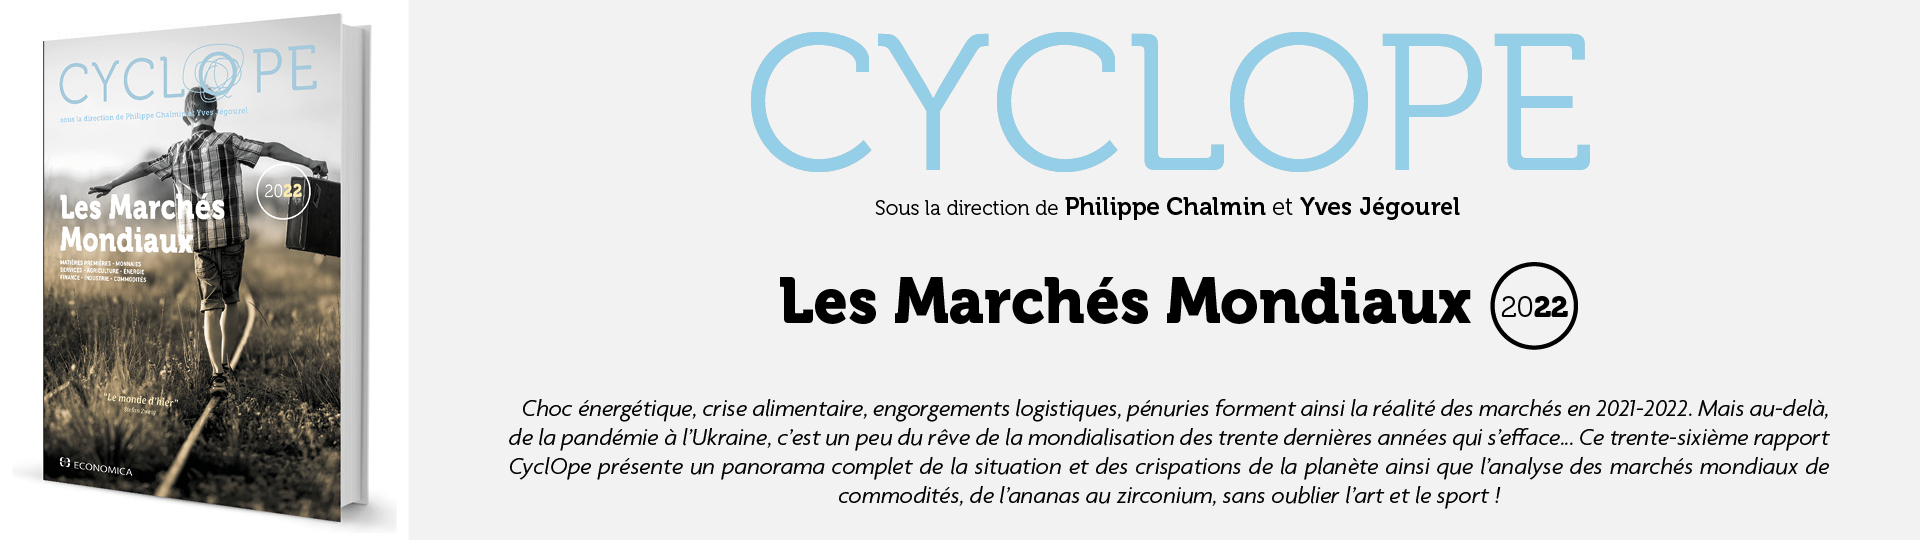 Cyclope - Les marchés mondiaux 2022 - Chalmin p. et Jégourel Y.